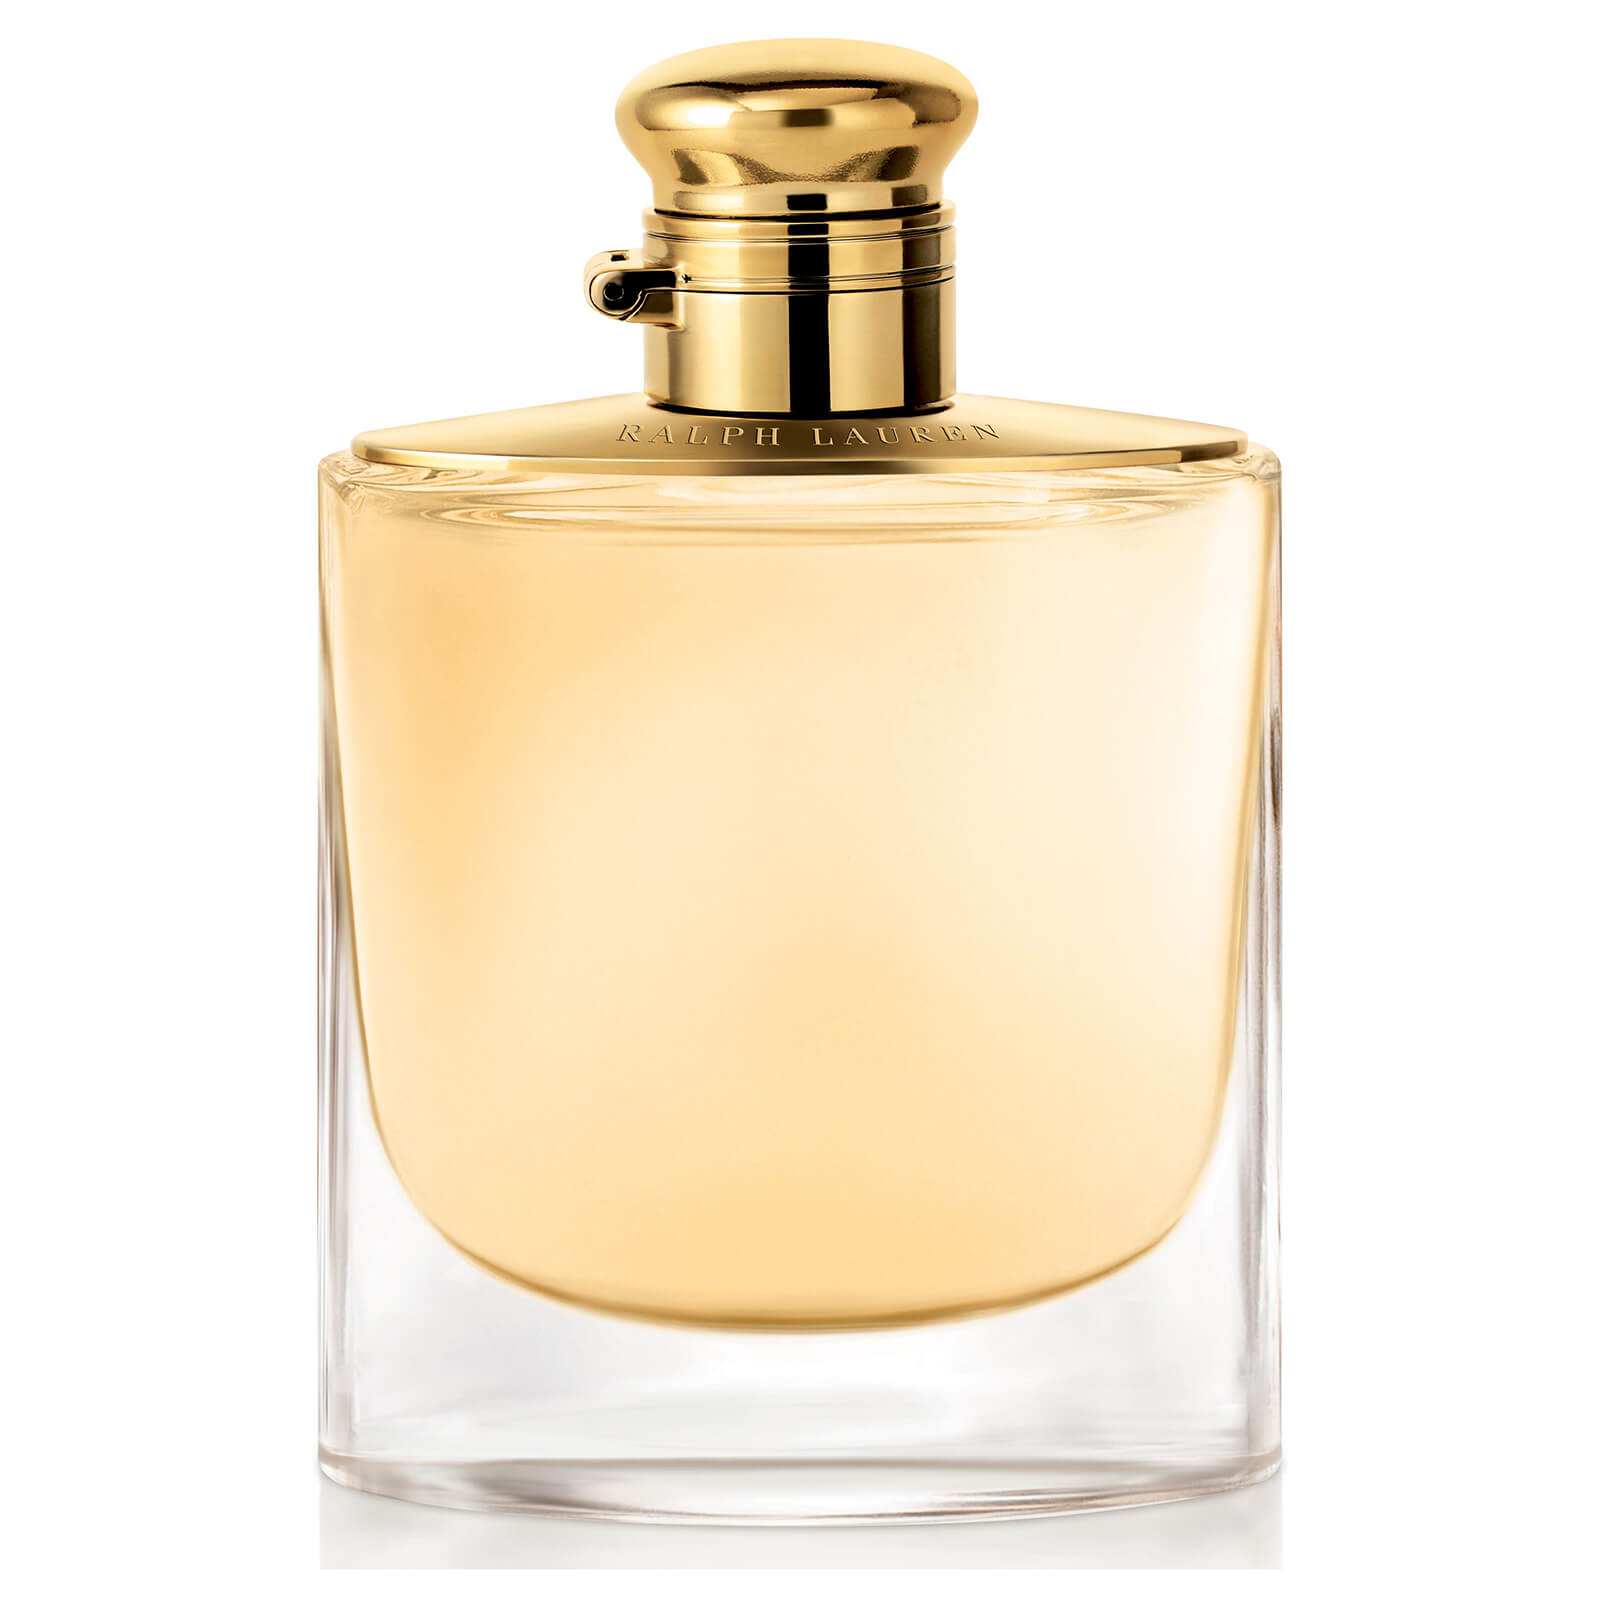 Ralph Lauren Woman Eau de Parfum - 100ml